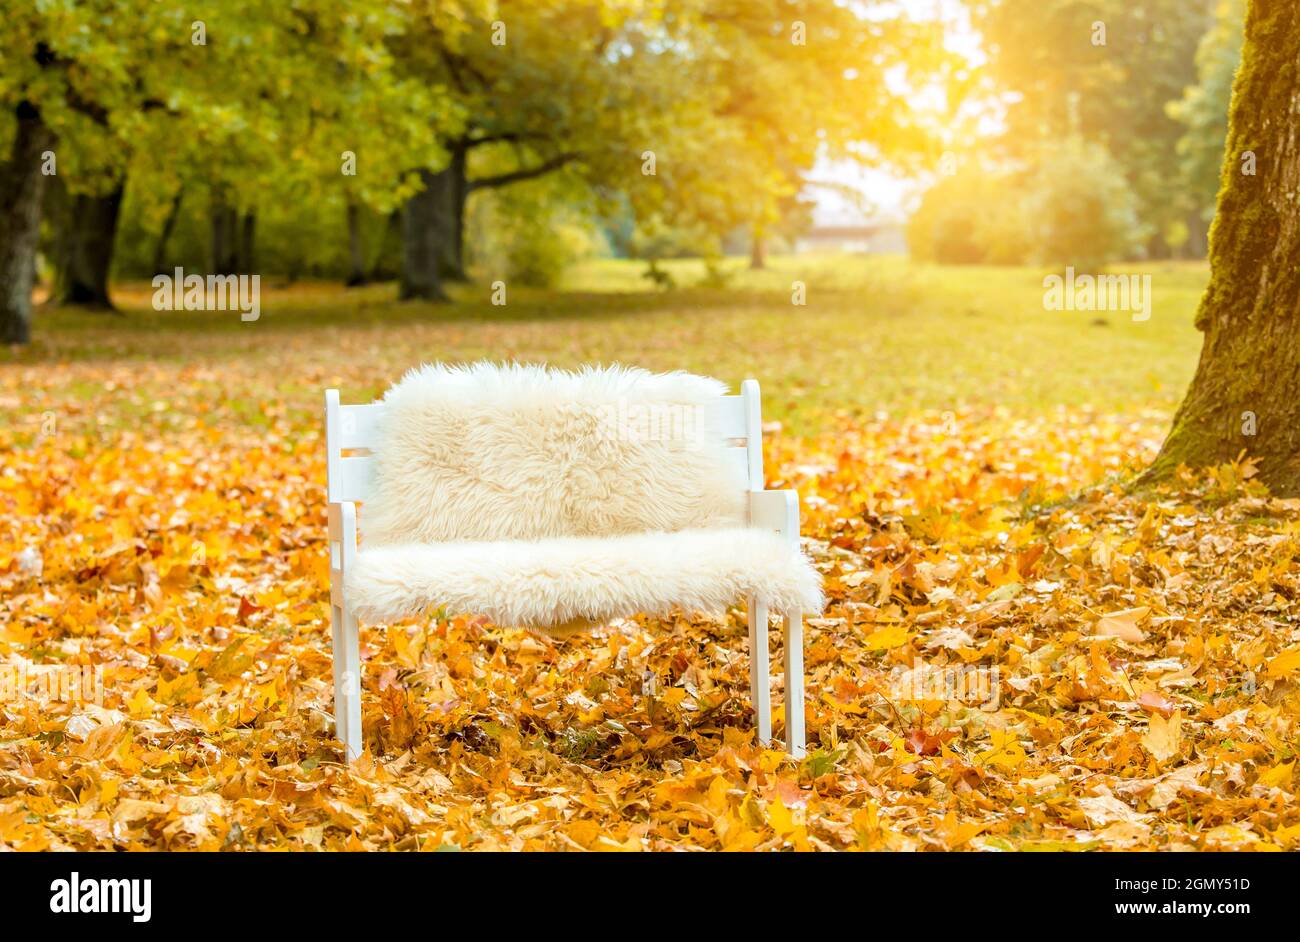 Idyllische Herbstset mit kleiner weißer Bank mit weichem Schaffell, viel goldenem Herbstahornblatt bedeckt Boden im Park, Sonne kommt vom Hintergrund. Stockfoto